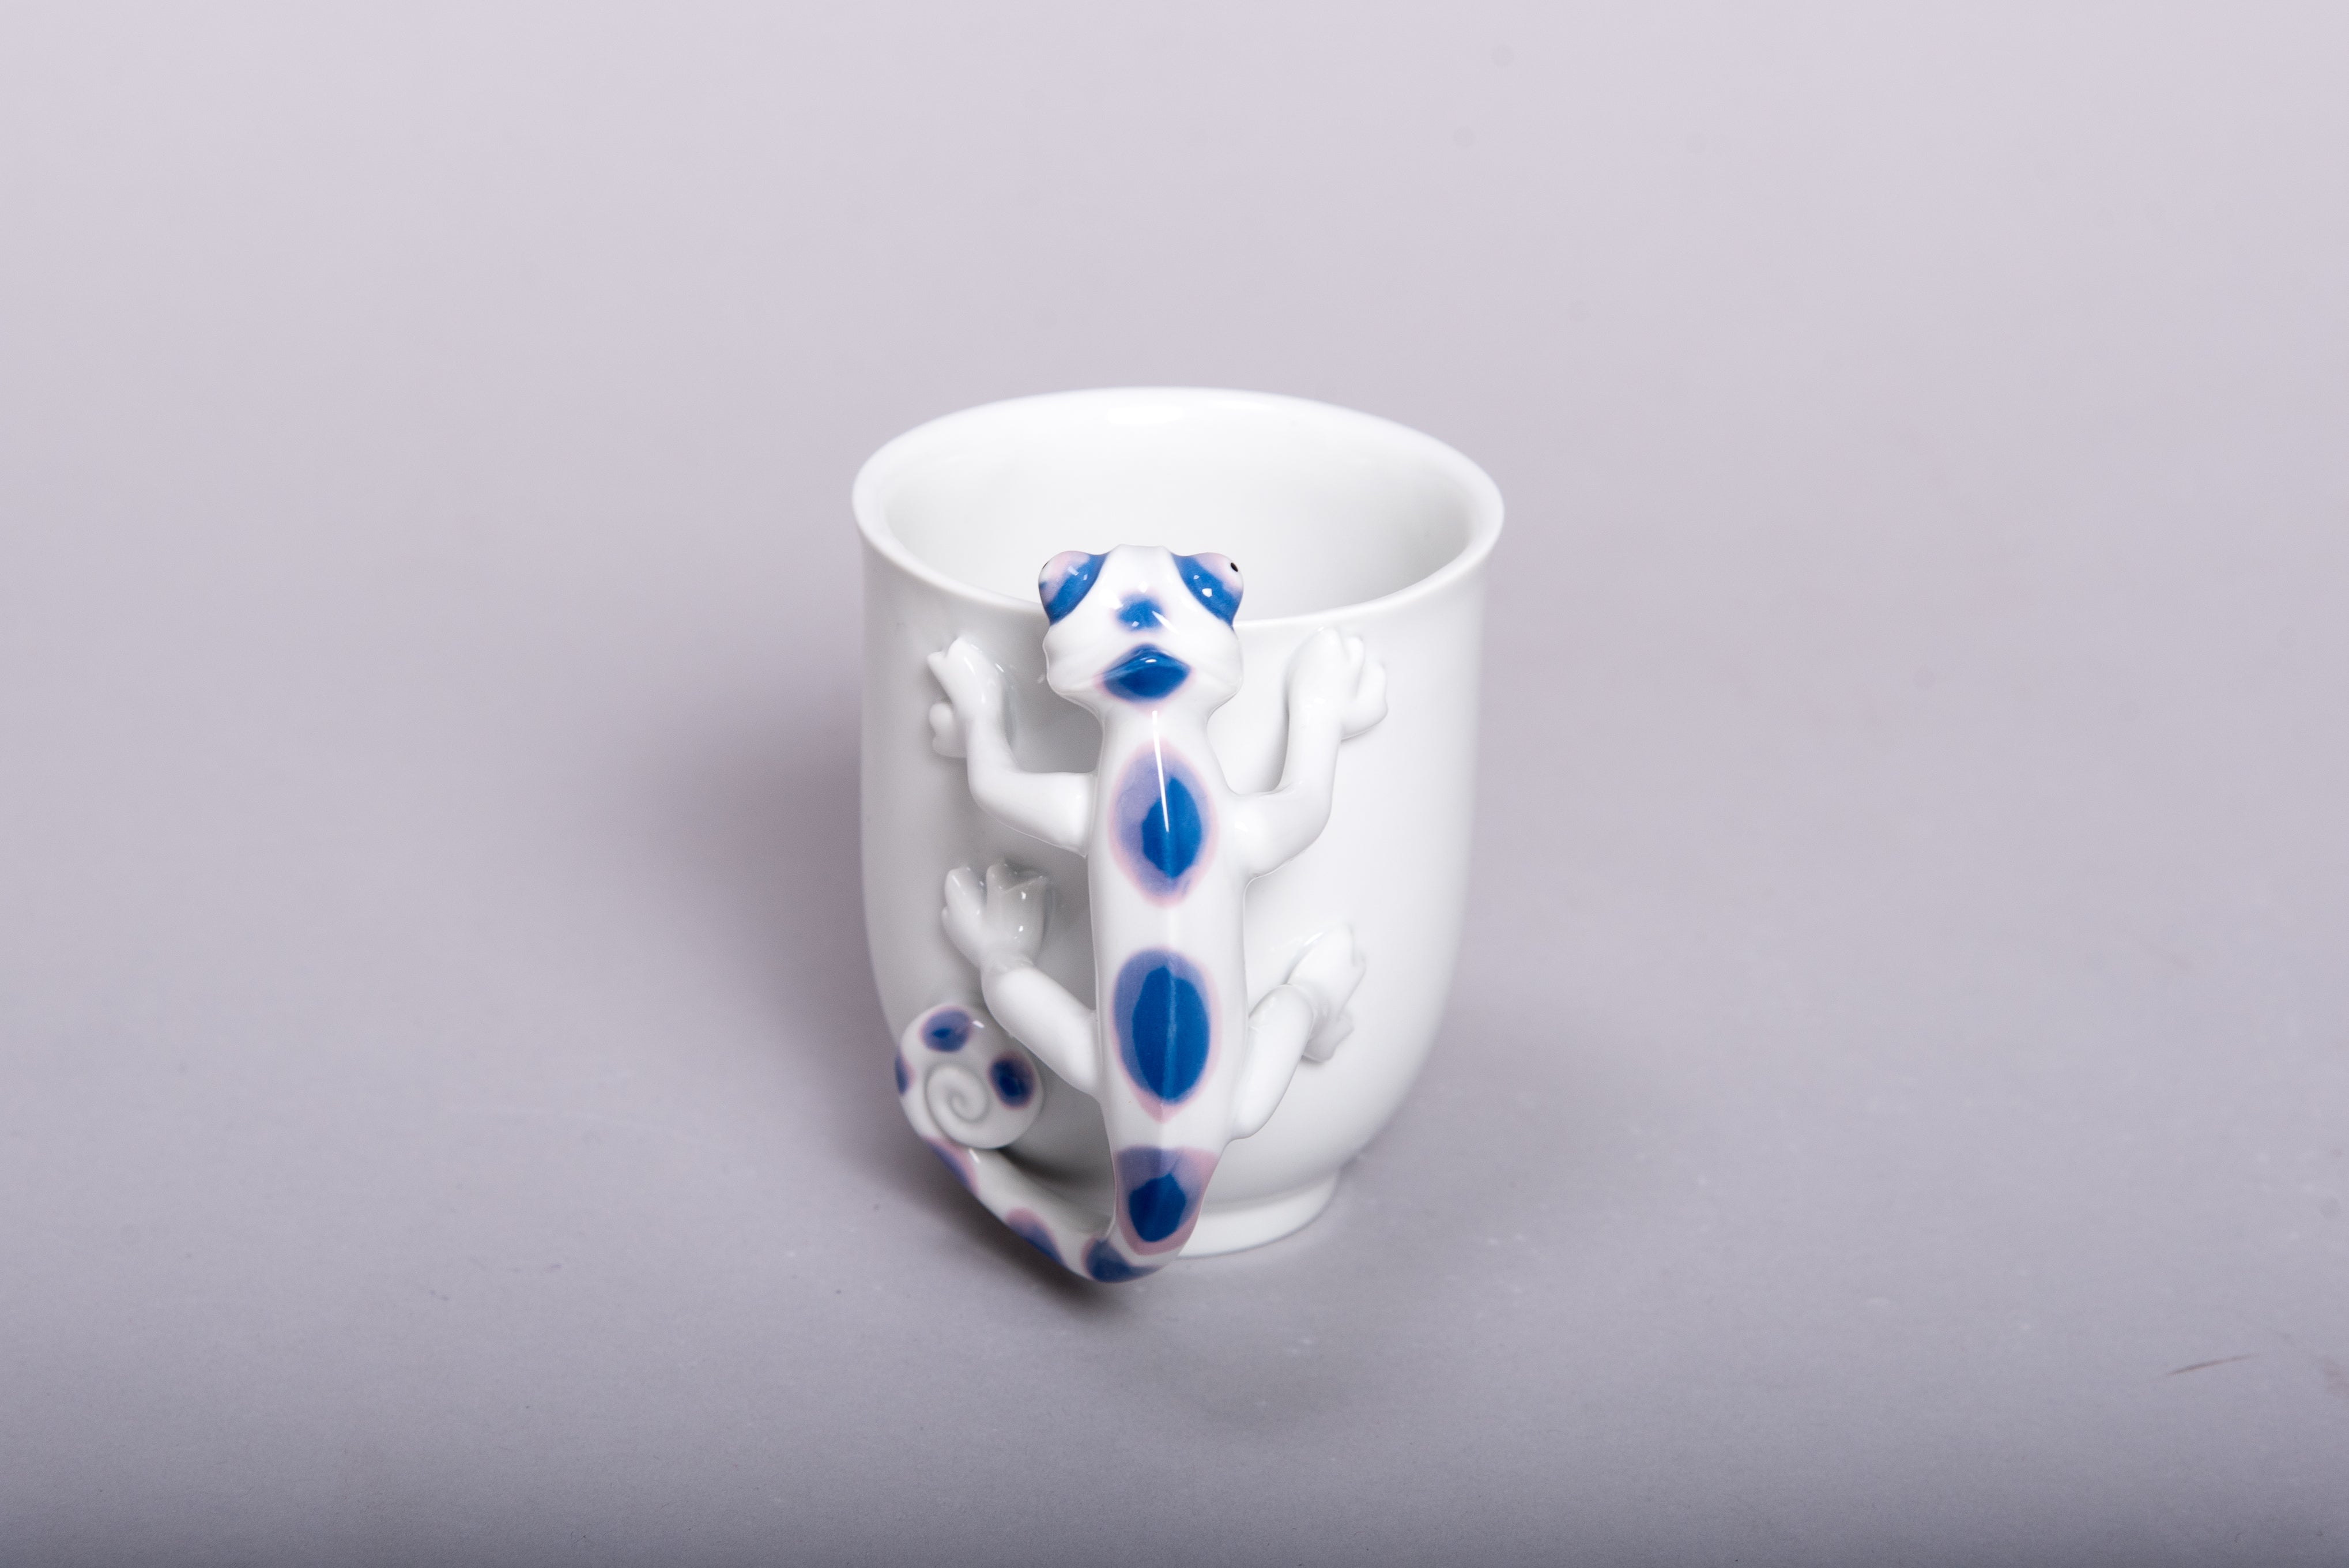 Retro Style Porcelain Cup 'CHAMELEON' l 12oz l